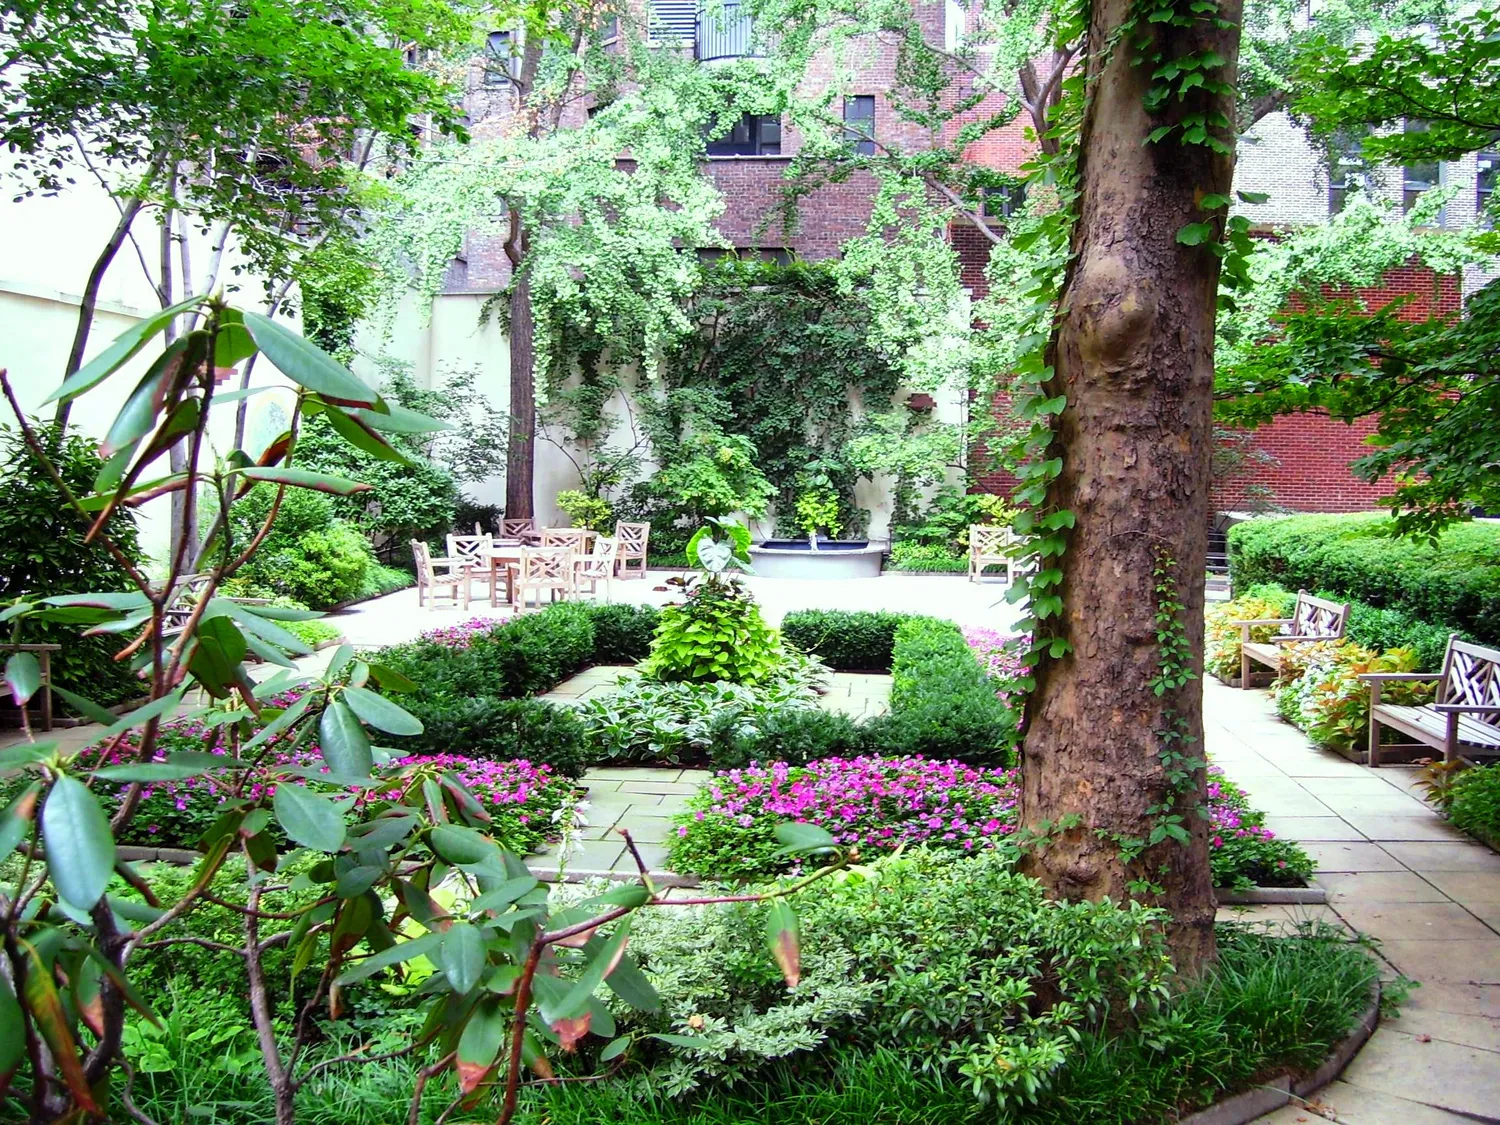 Resident's Keyed Garden
